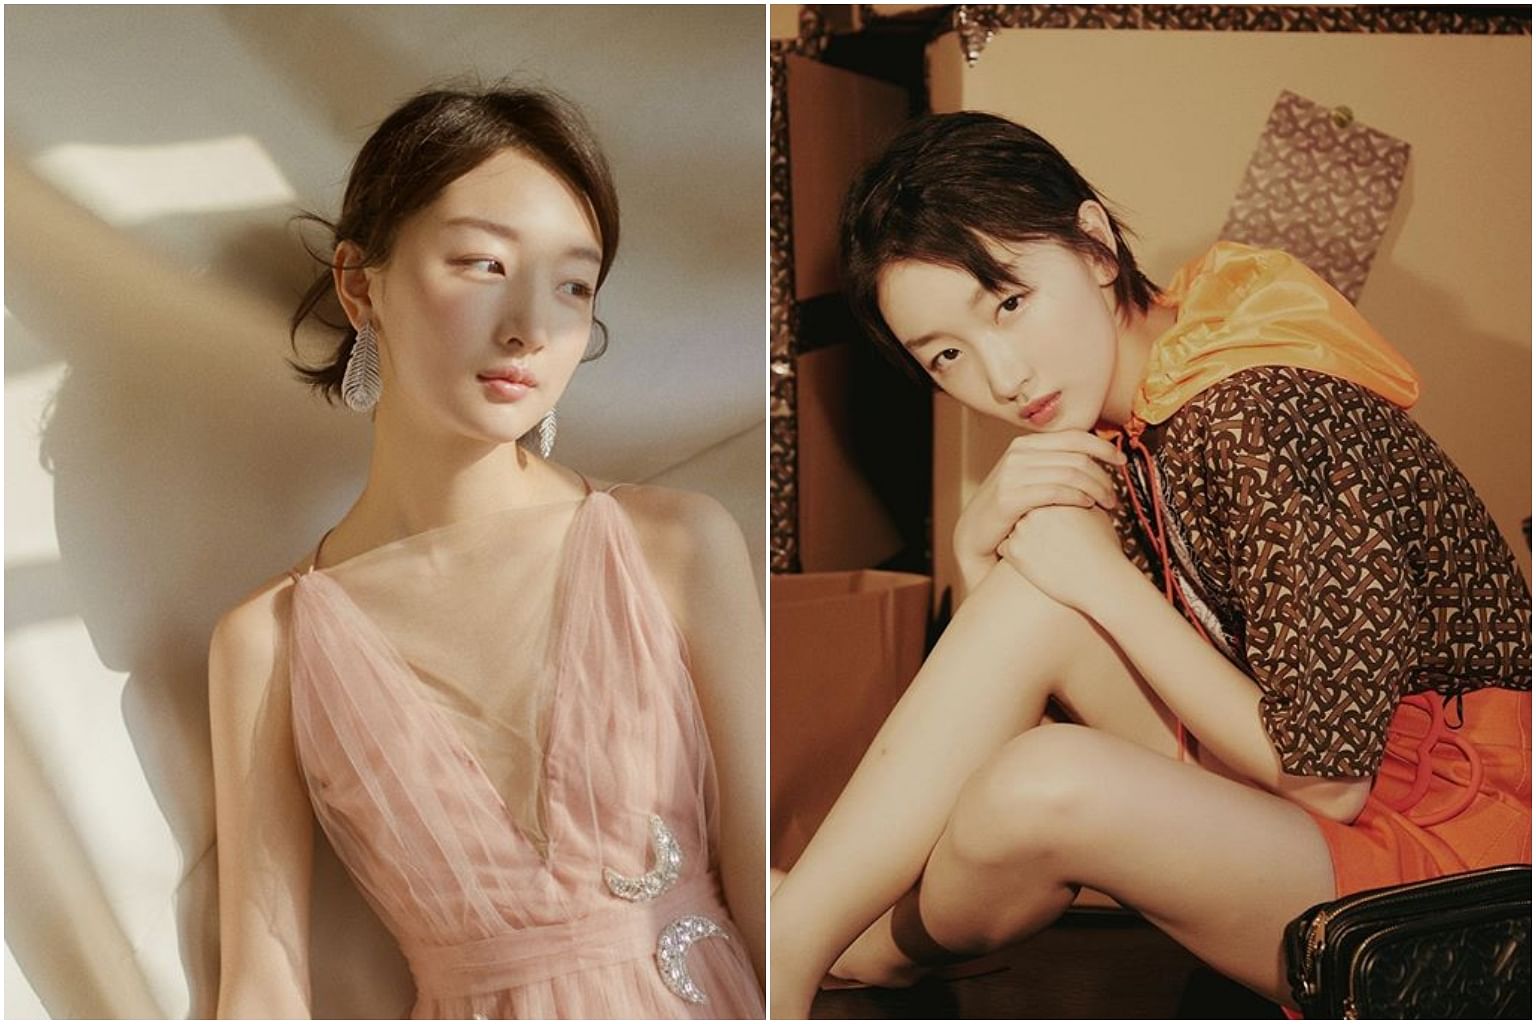 Surprise as Victoria's Secret unveils actress Zhou Dongyu as its